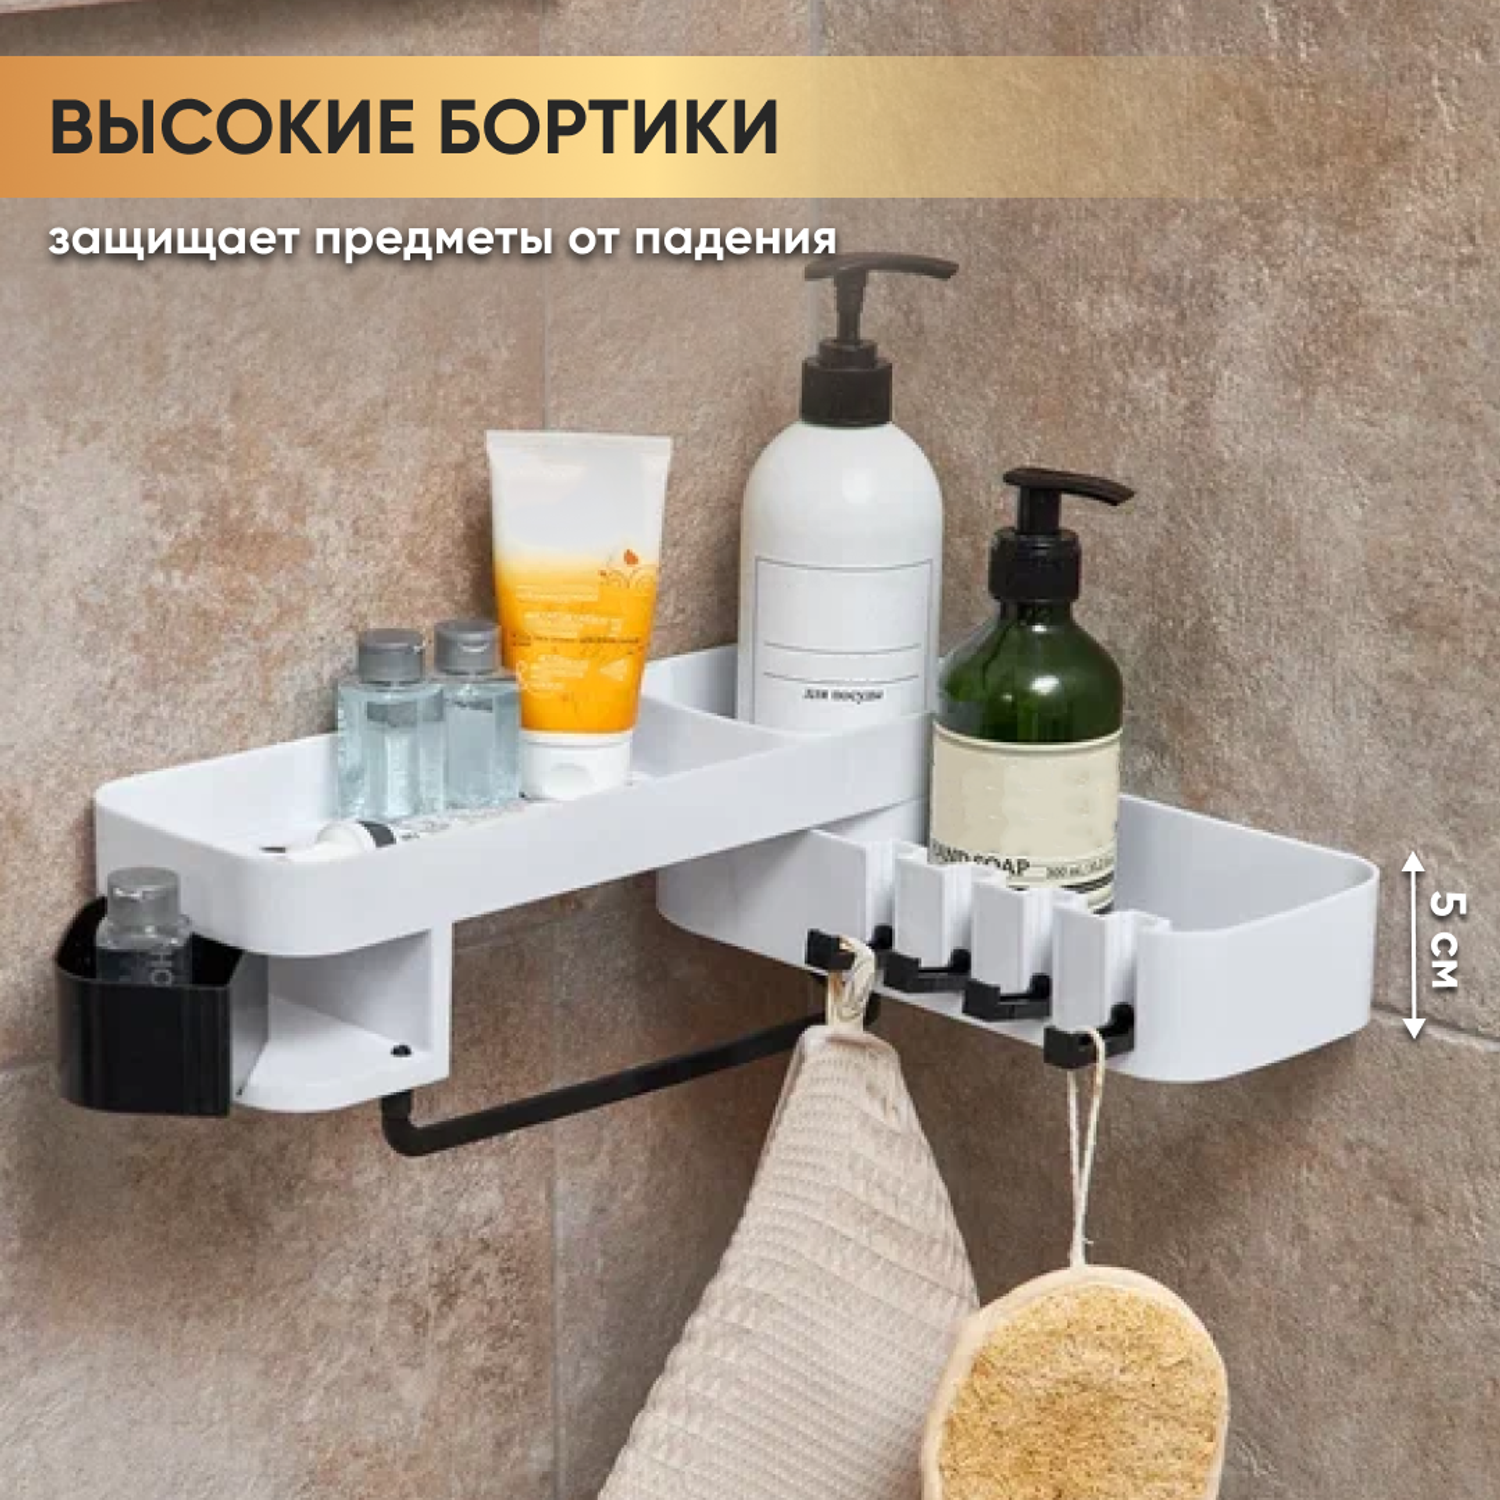 Полка для ванной комнаты oqqi с 4 крючками и держателями для полотенец - фото 2